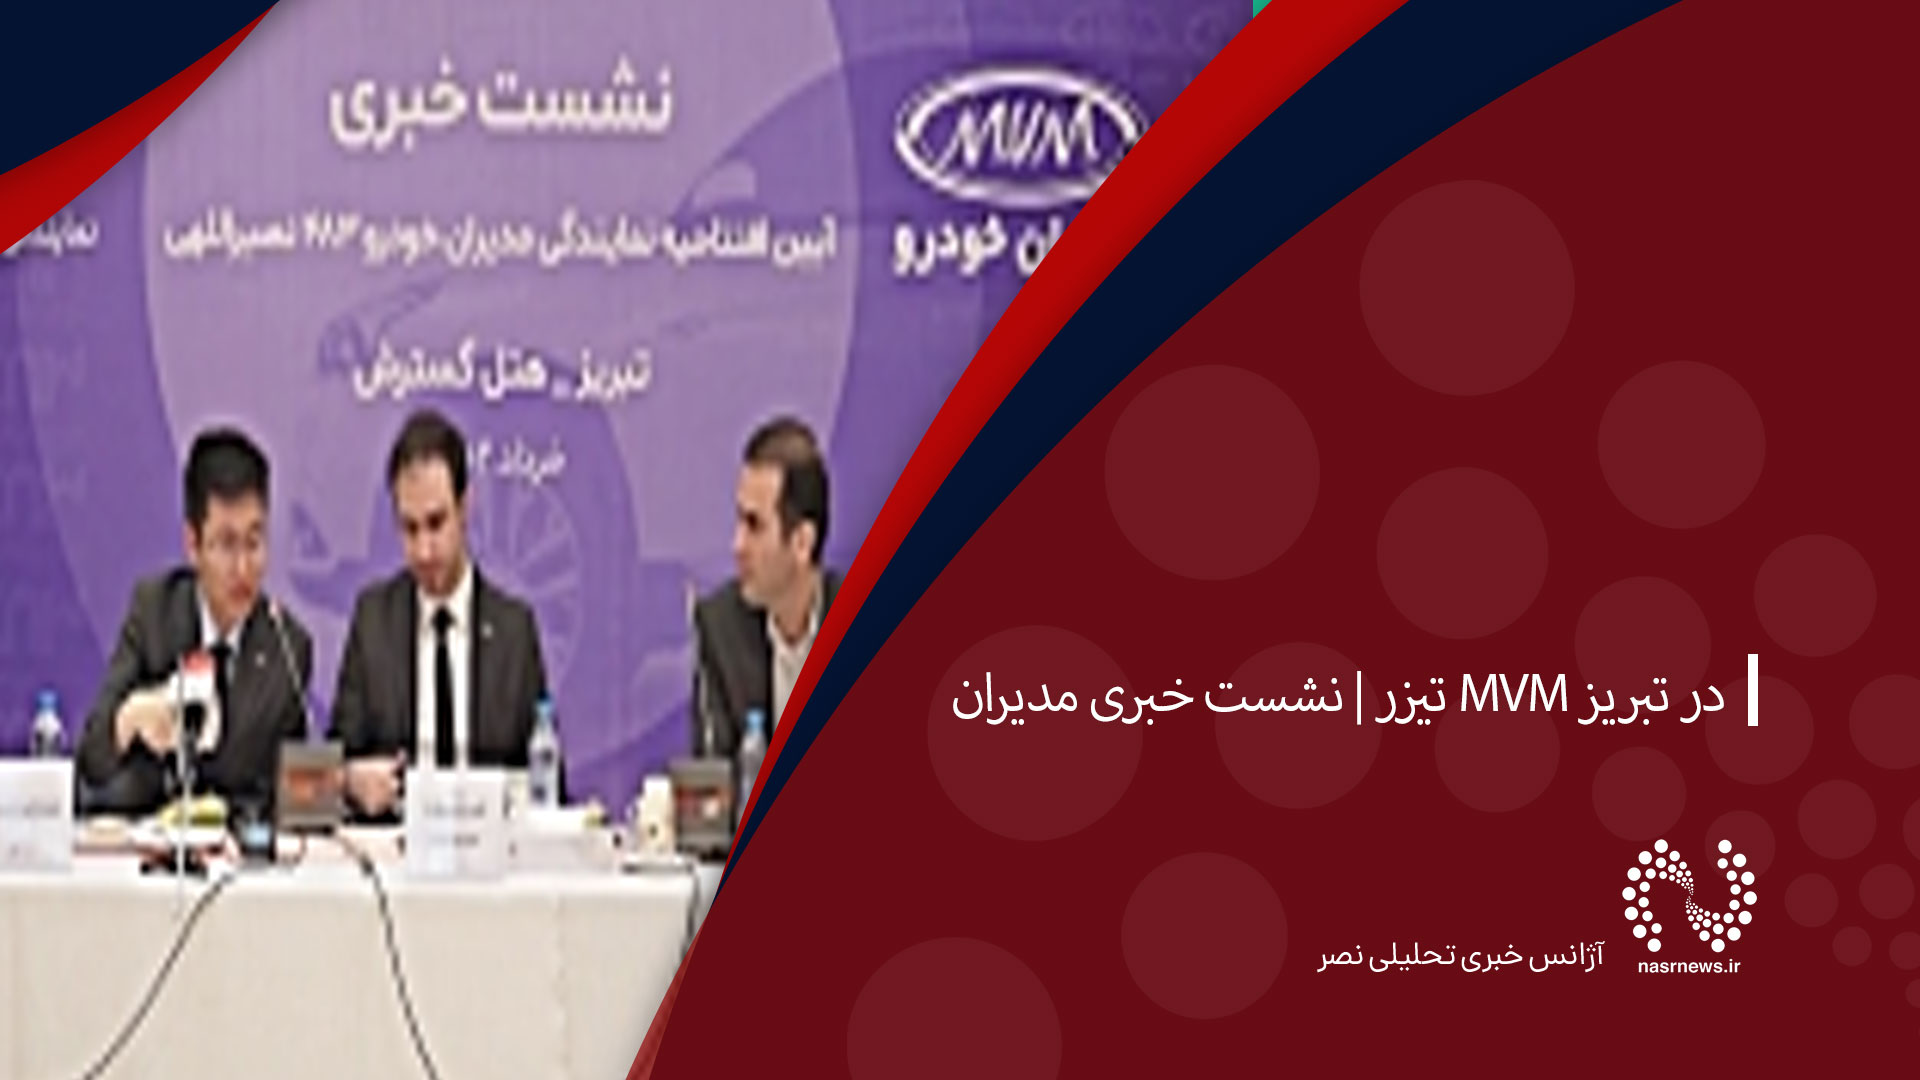 تیزر | نشست خبری مدیران MVM در تبریز